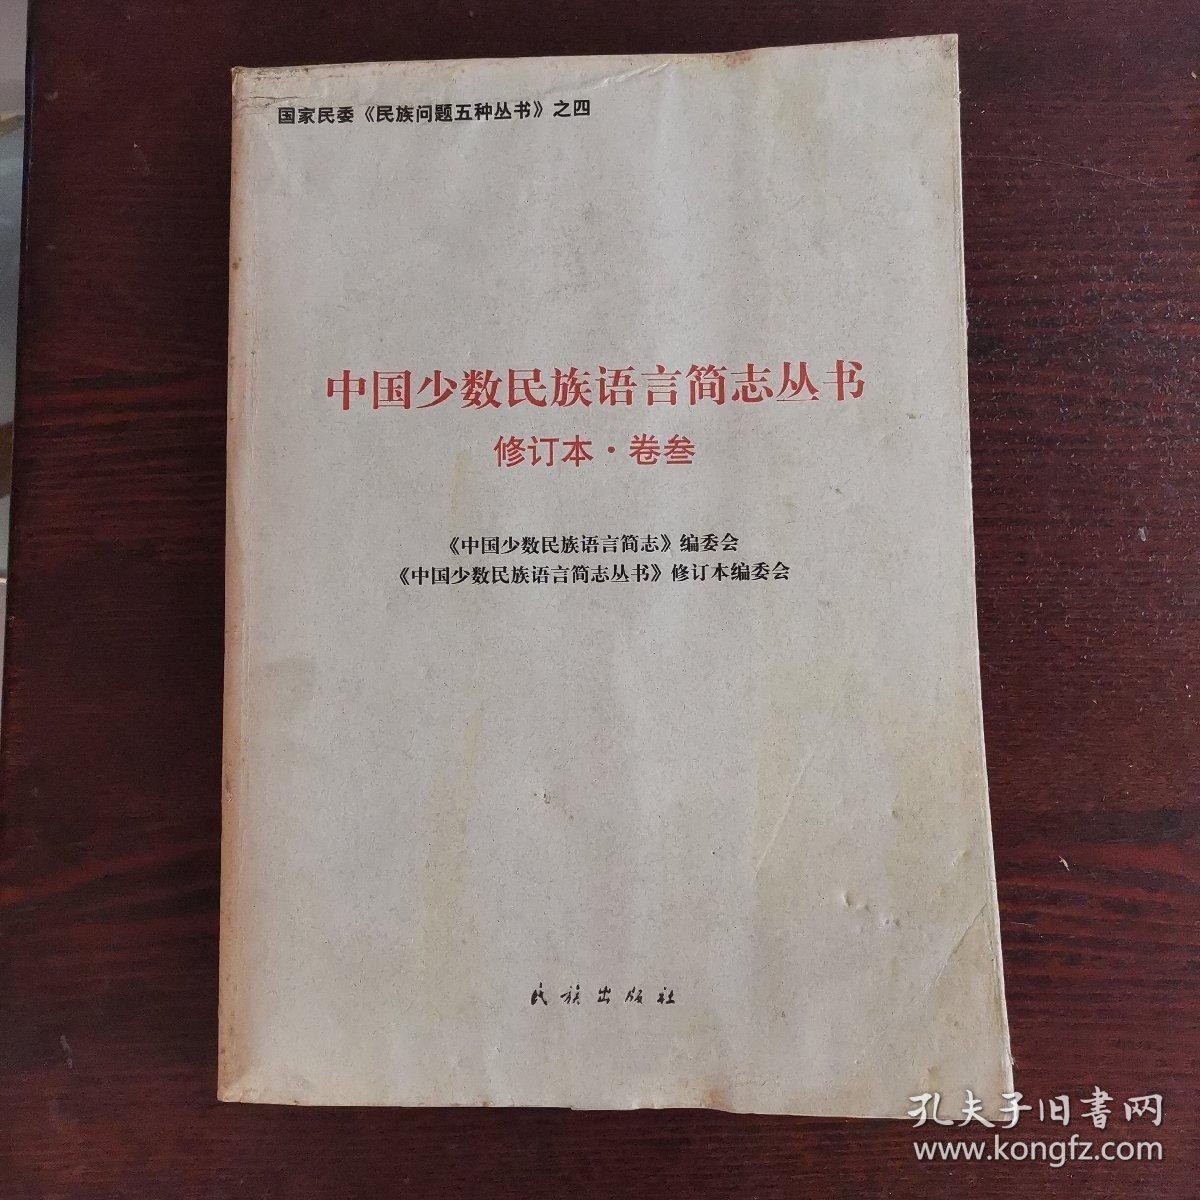 中国少数民族语言简志丛书——修订本·卷叁